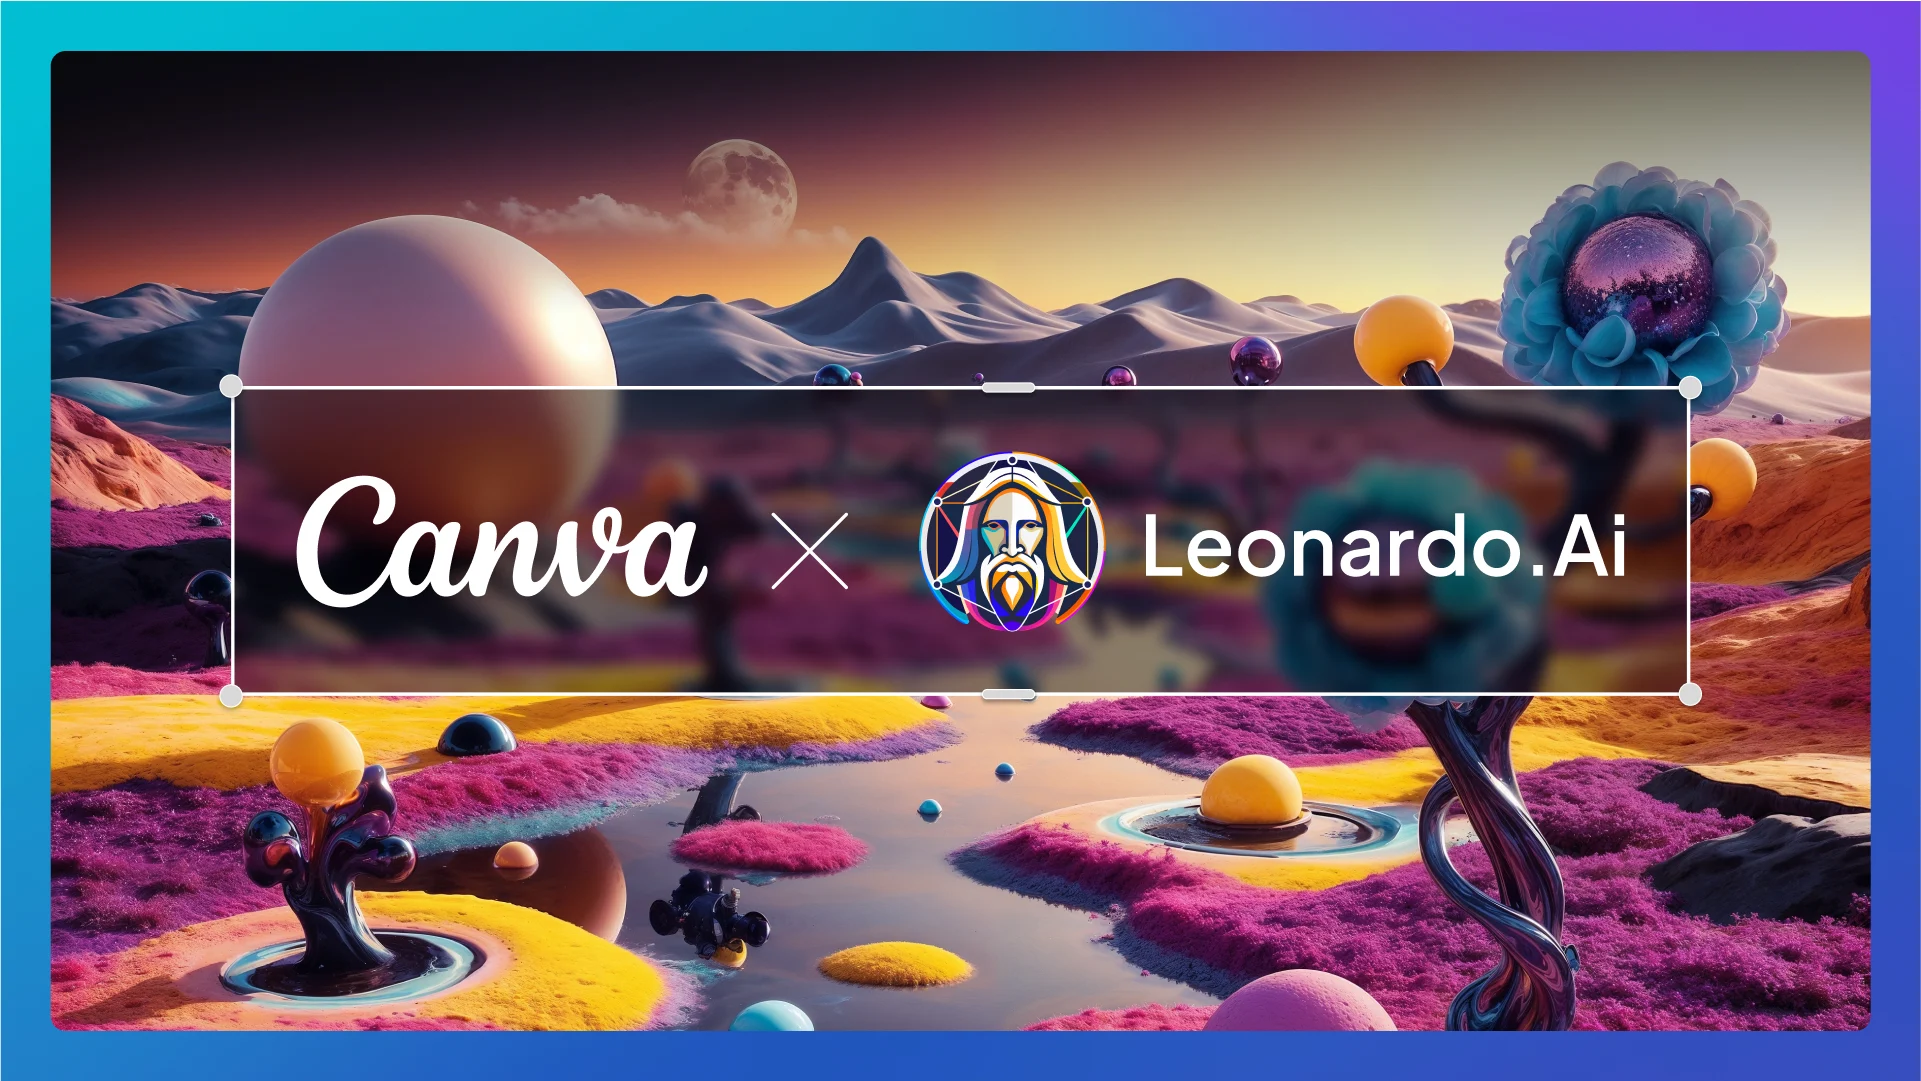 Die Plattform Canva hat das Startup Leonardo.ai übernommen, um seine Entwicklungen im Bereich der generativen künstlichen Intelligenz zu stärken